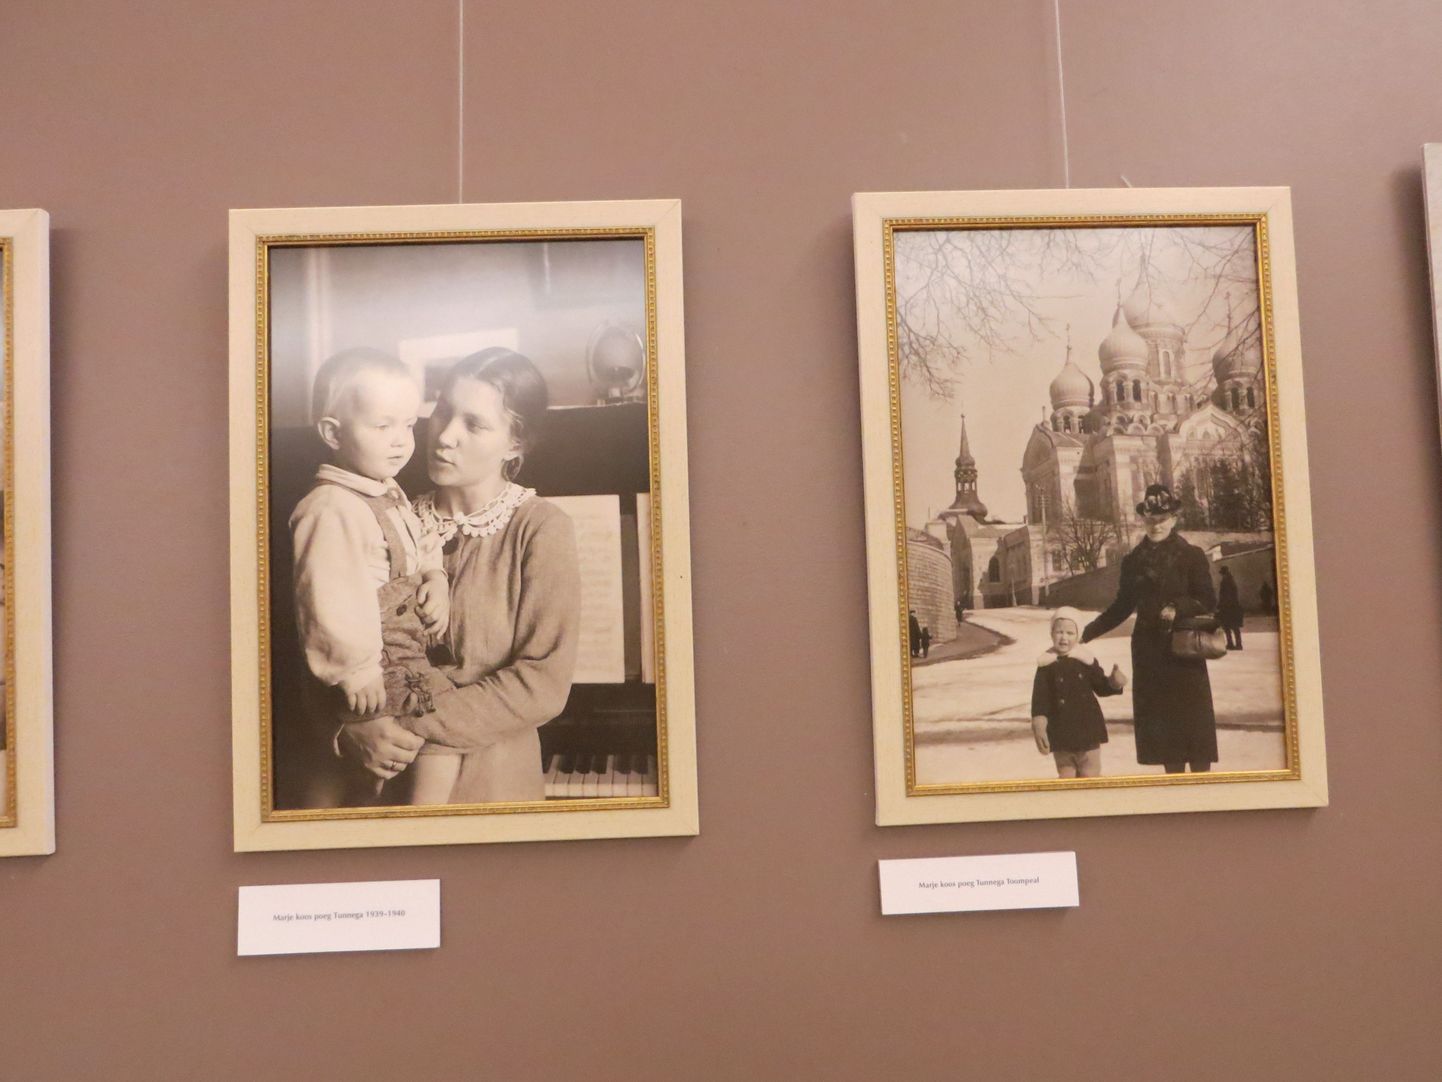 Valga kultuurikeskuses oleval Tunne Kelami elu ja tööd tutvustaval näitusel on ka fotosid, millel tulevane poliitik koos emaga. Parempoolne pilt on seejuures tehtud 1939. aastal Toompeal.